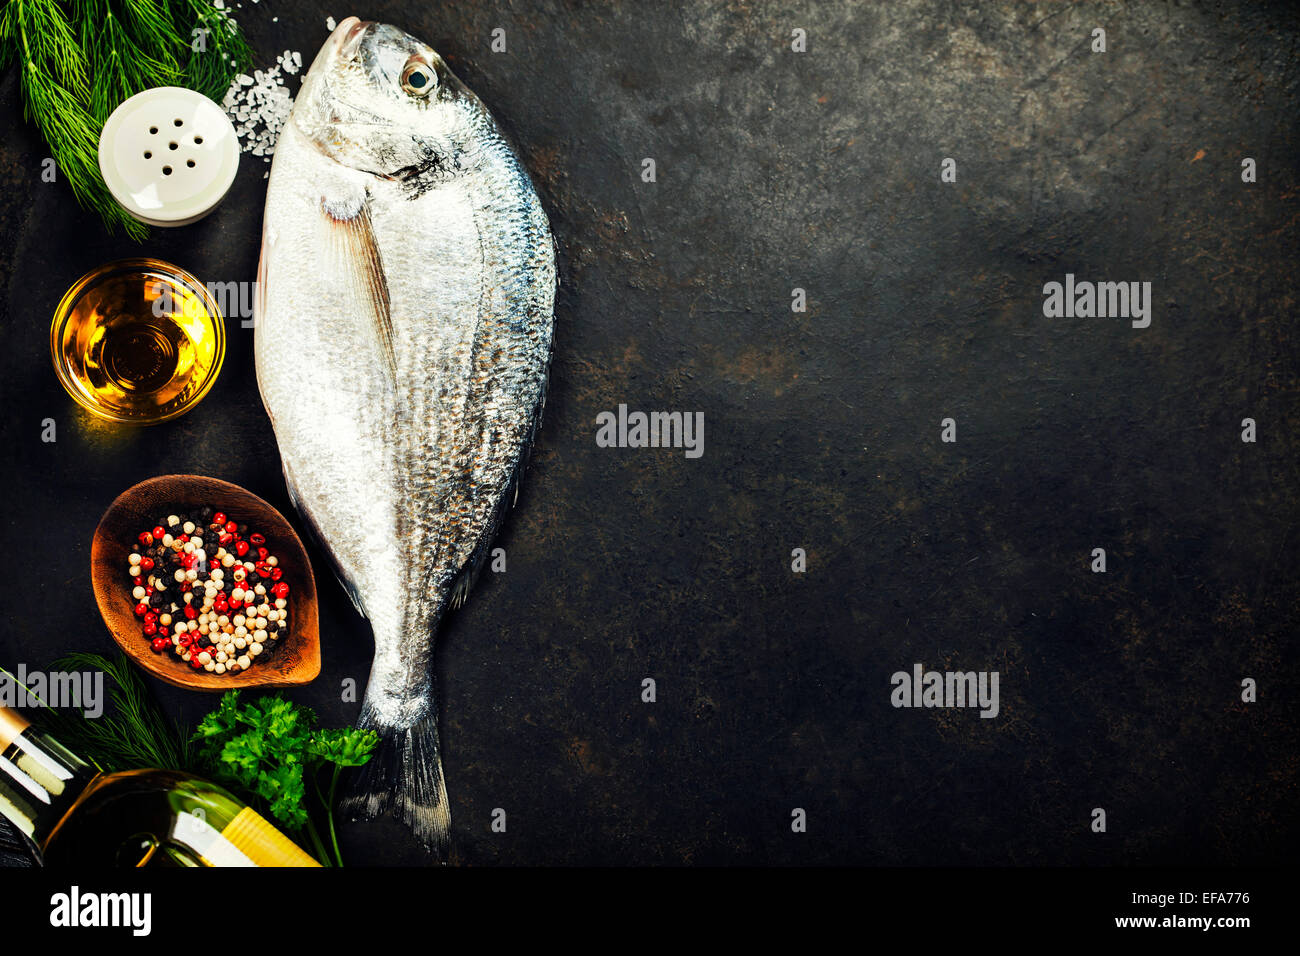 Köstlichen frischen Fisch auf dunkle Vintage-Hintergrund. Fisch mit aromatischen Kräutern, Gewürzen und Gemüse - gesunde Ernährung, Diät oder Kochen Stockfoto